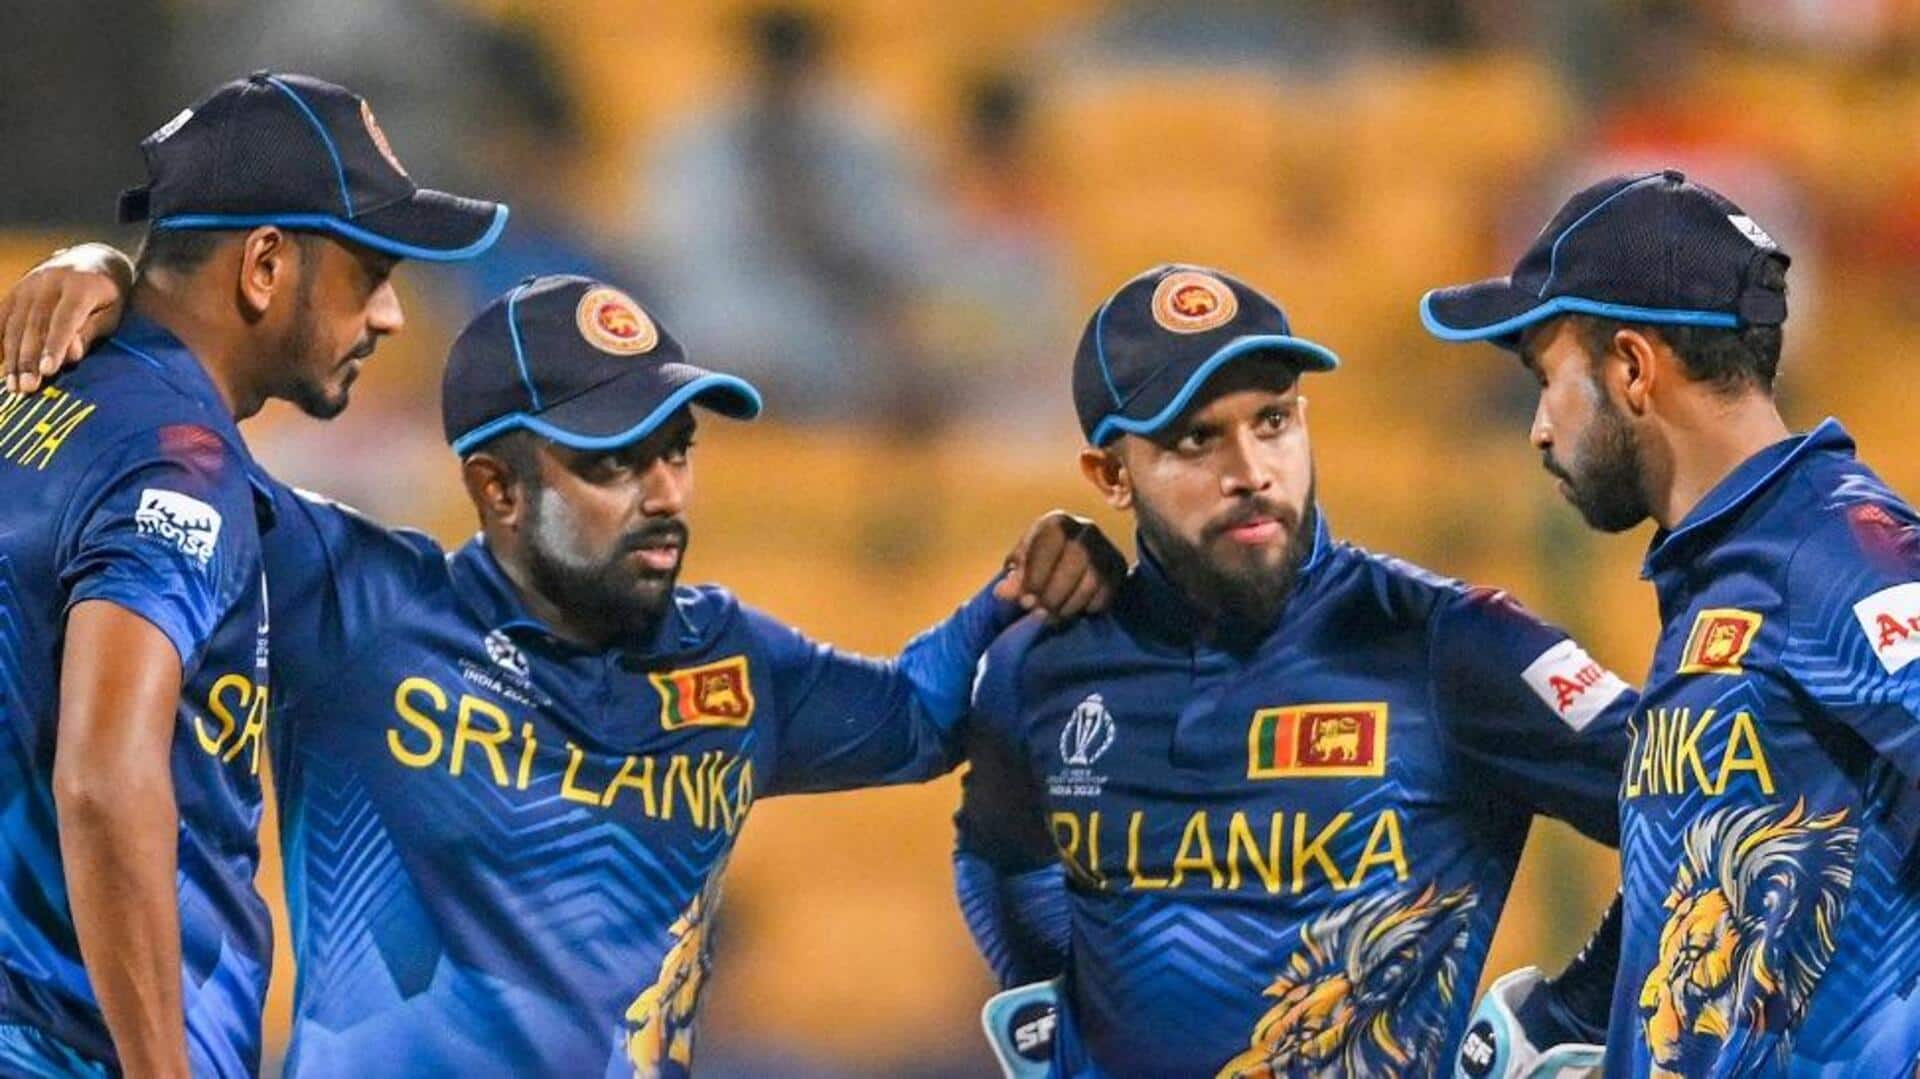 श्रीलंका क्रिकेट टीम निलंबन के बावजूद भी खेल पाएगी अंतरराष्ट्रीय मैच, जानिए कैसे मिली अनुमति